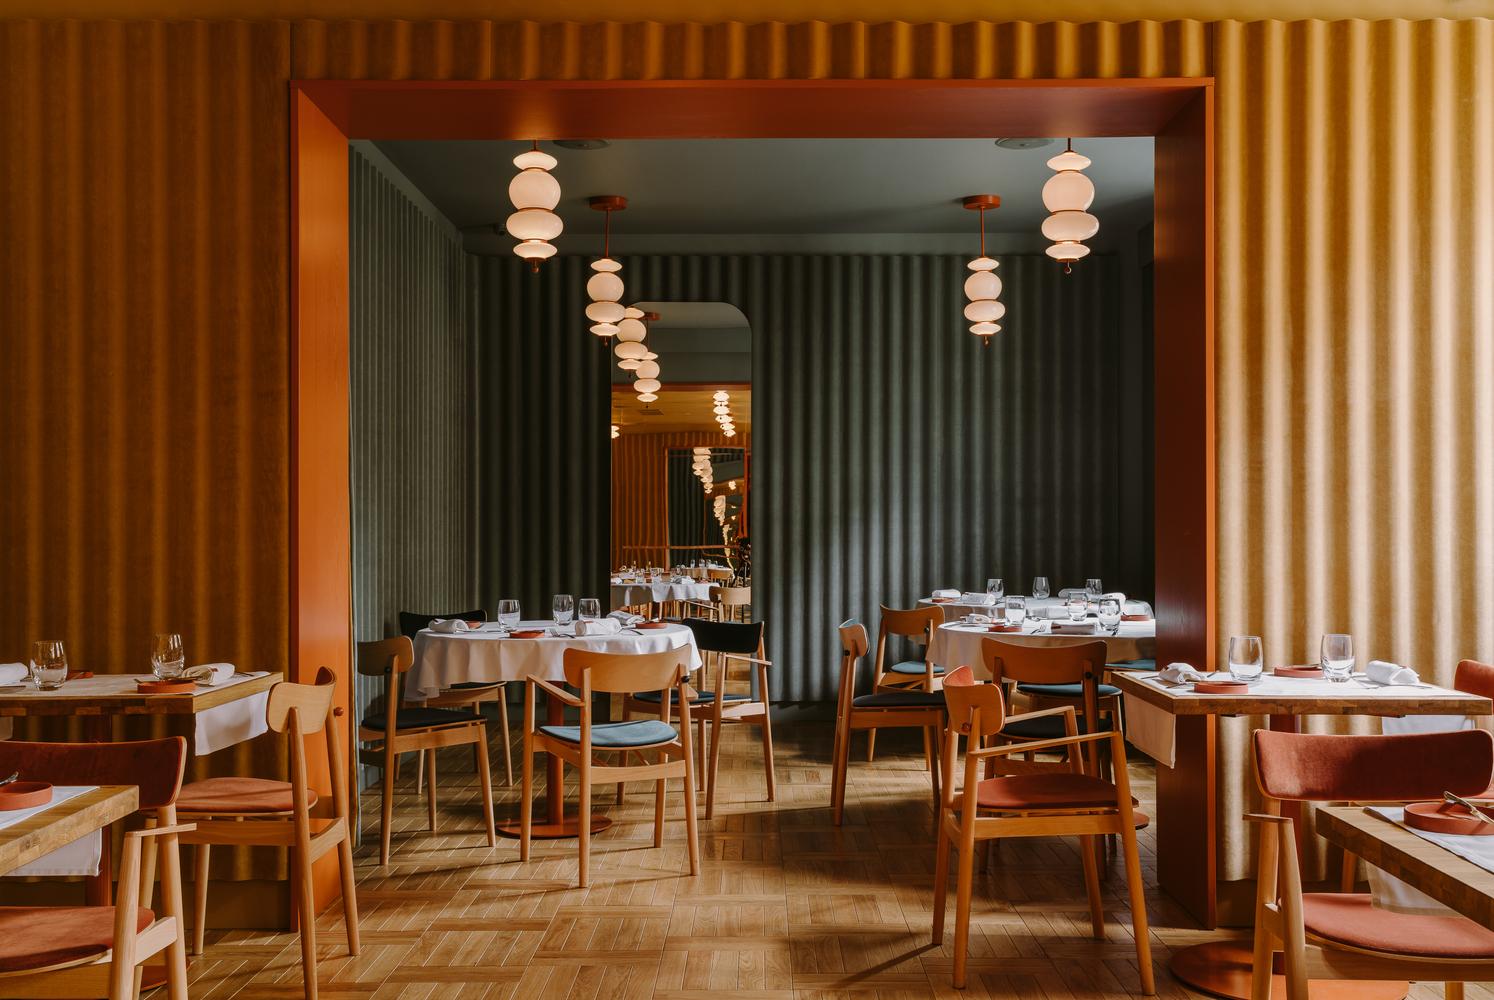 【波蘭華沙餐廳】 奢華裝潢配完美配色 營造出獨特美學體驗